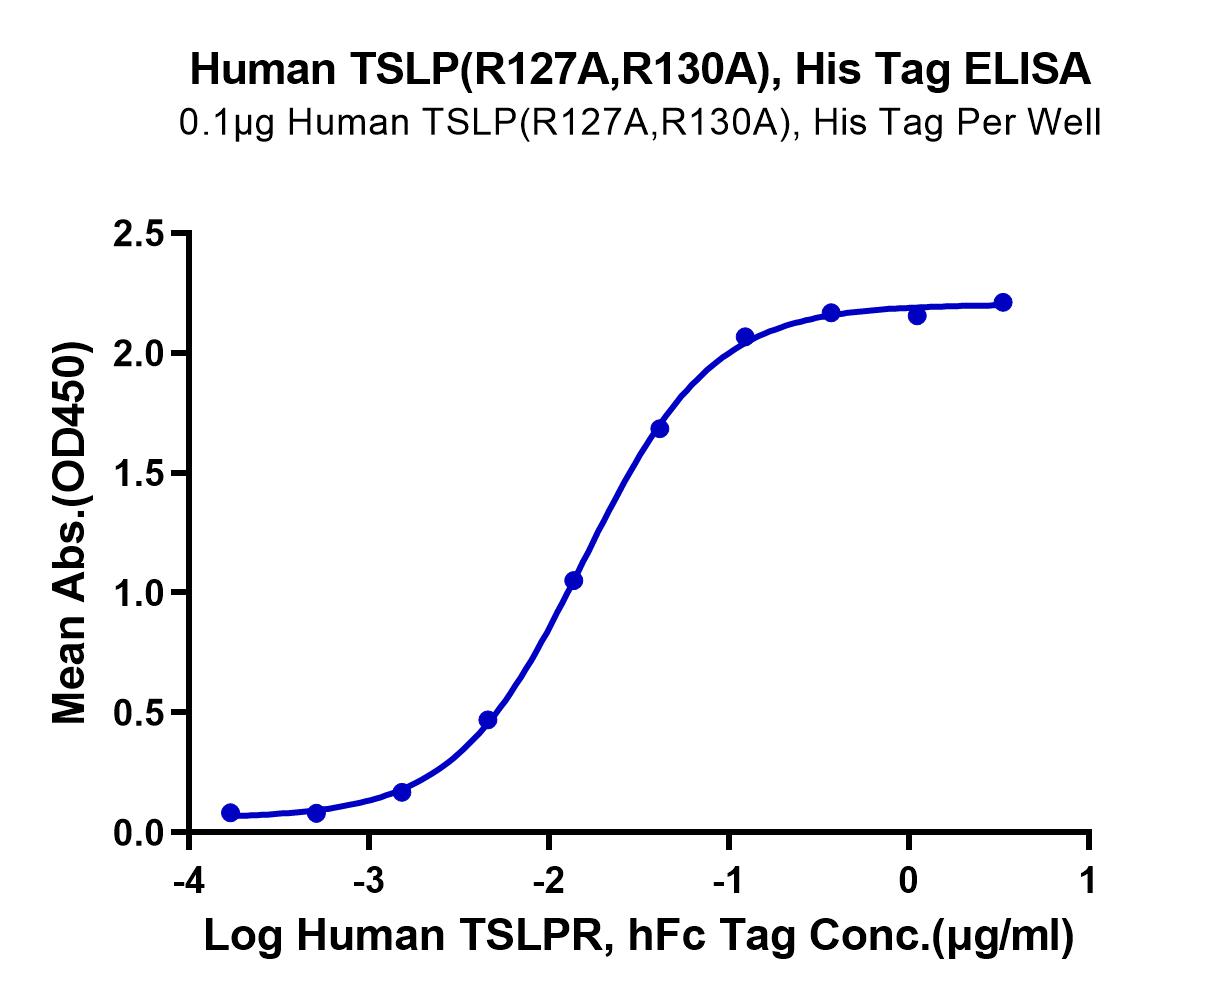 Human TSLP (R127A, R130A) Protein (LTP10844)